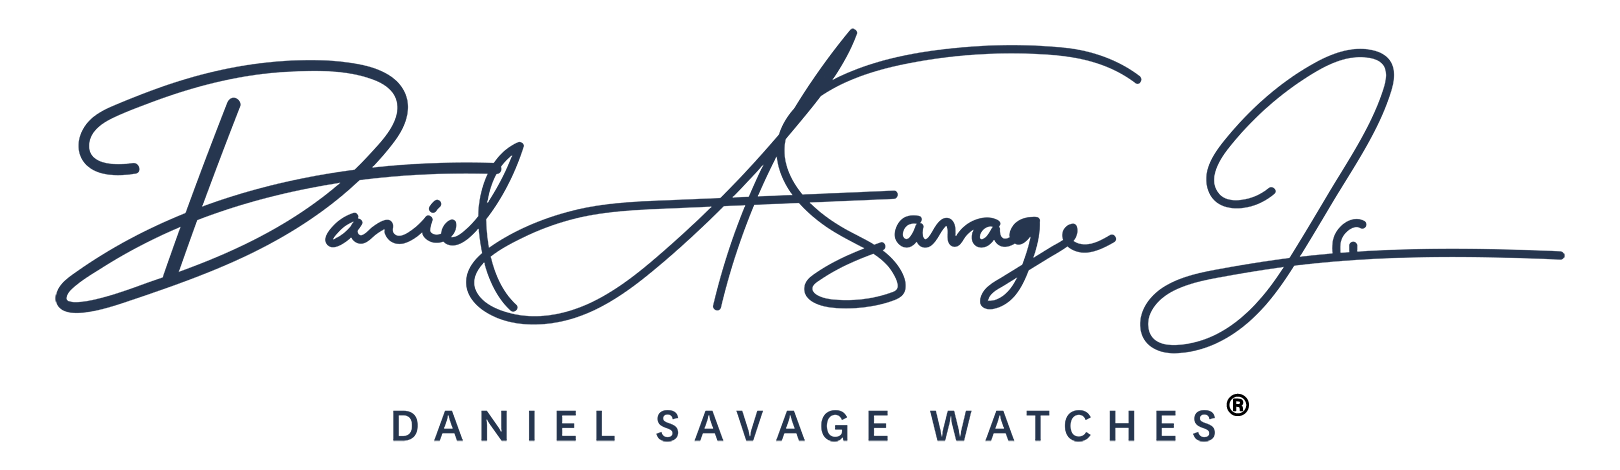 Daniel Savage Watches